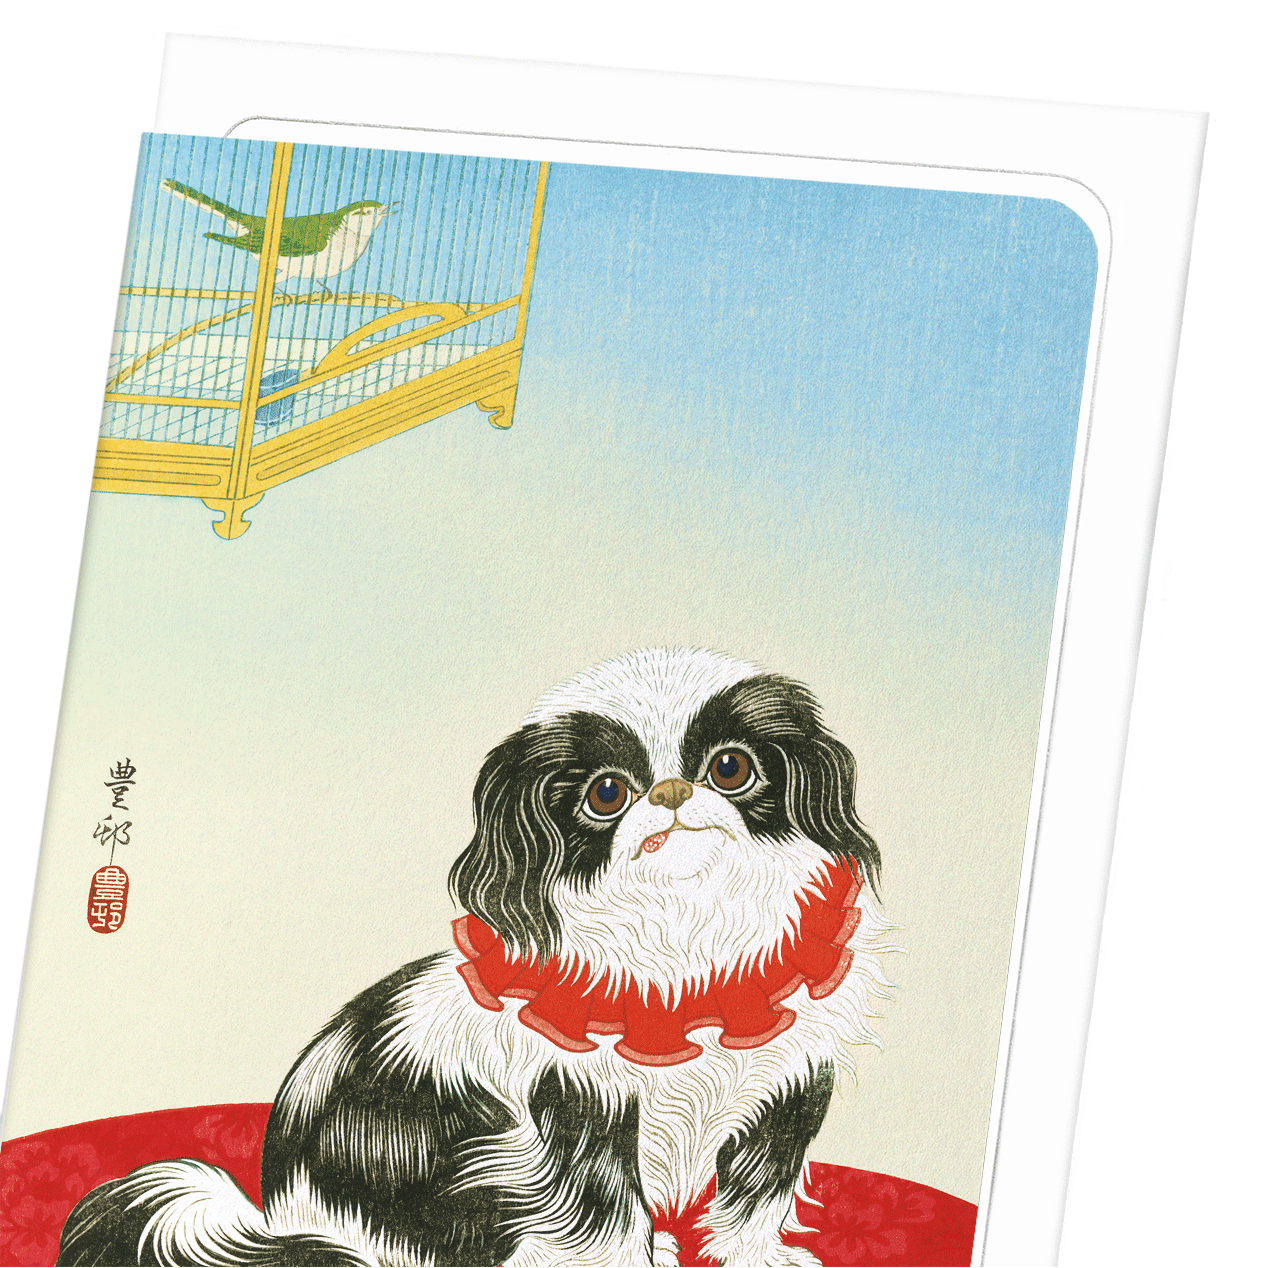 PEKINGESE DOG (C.1930): Japanese Greeting Card